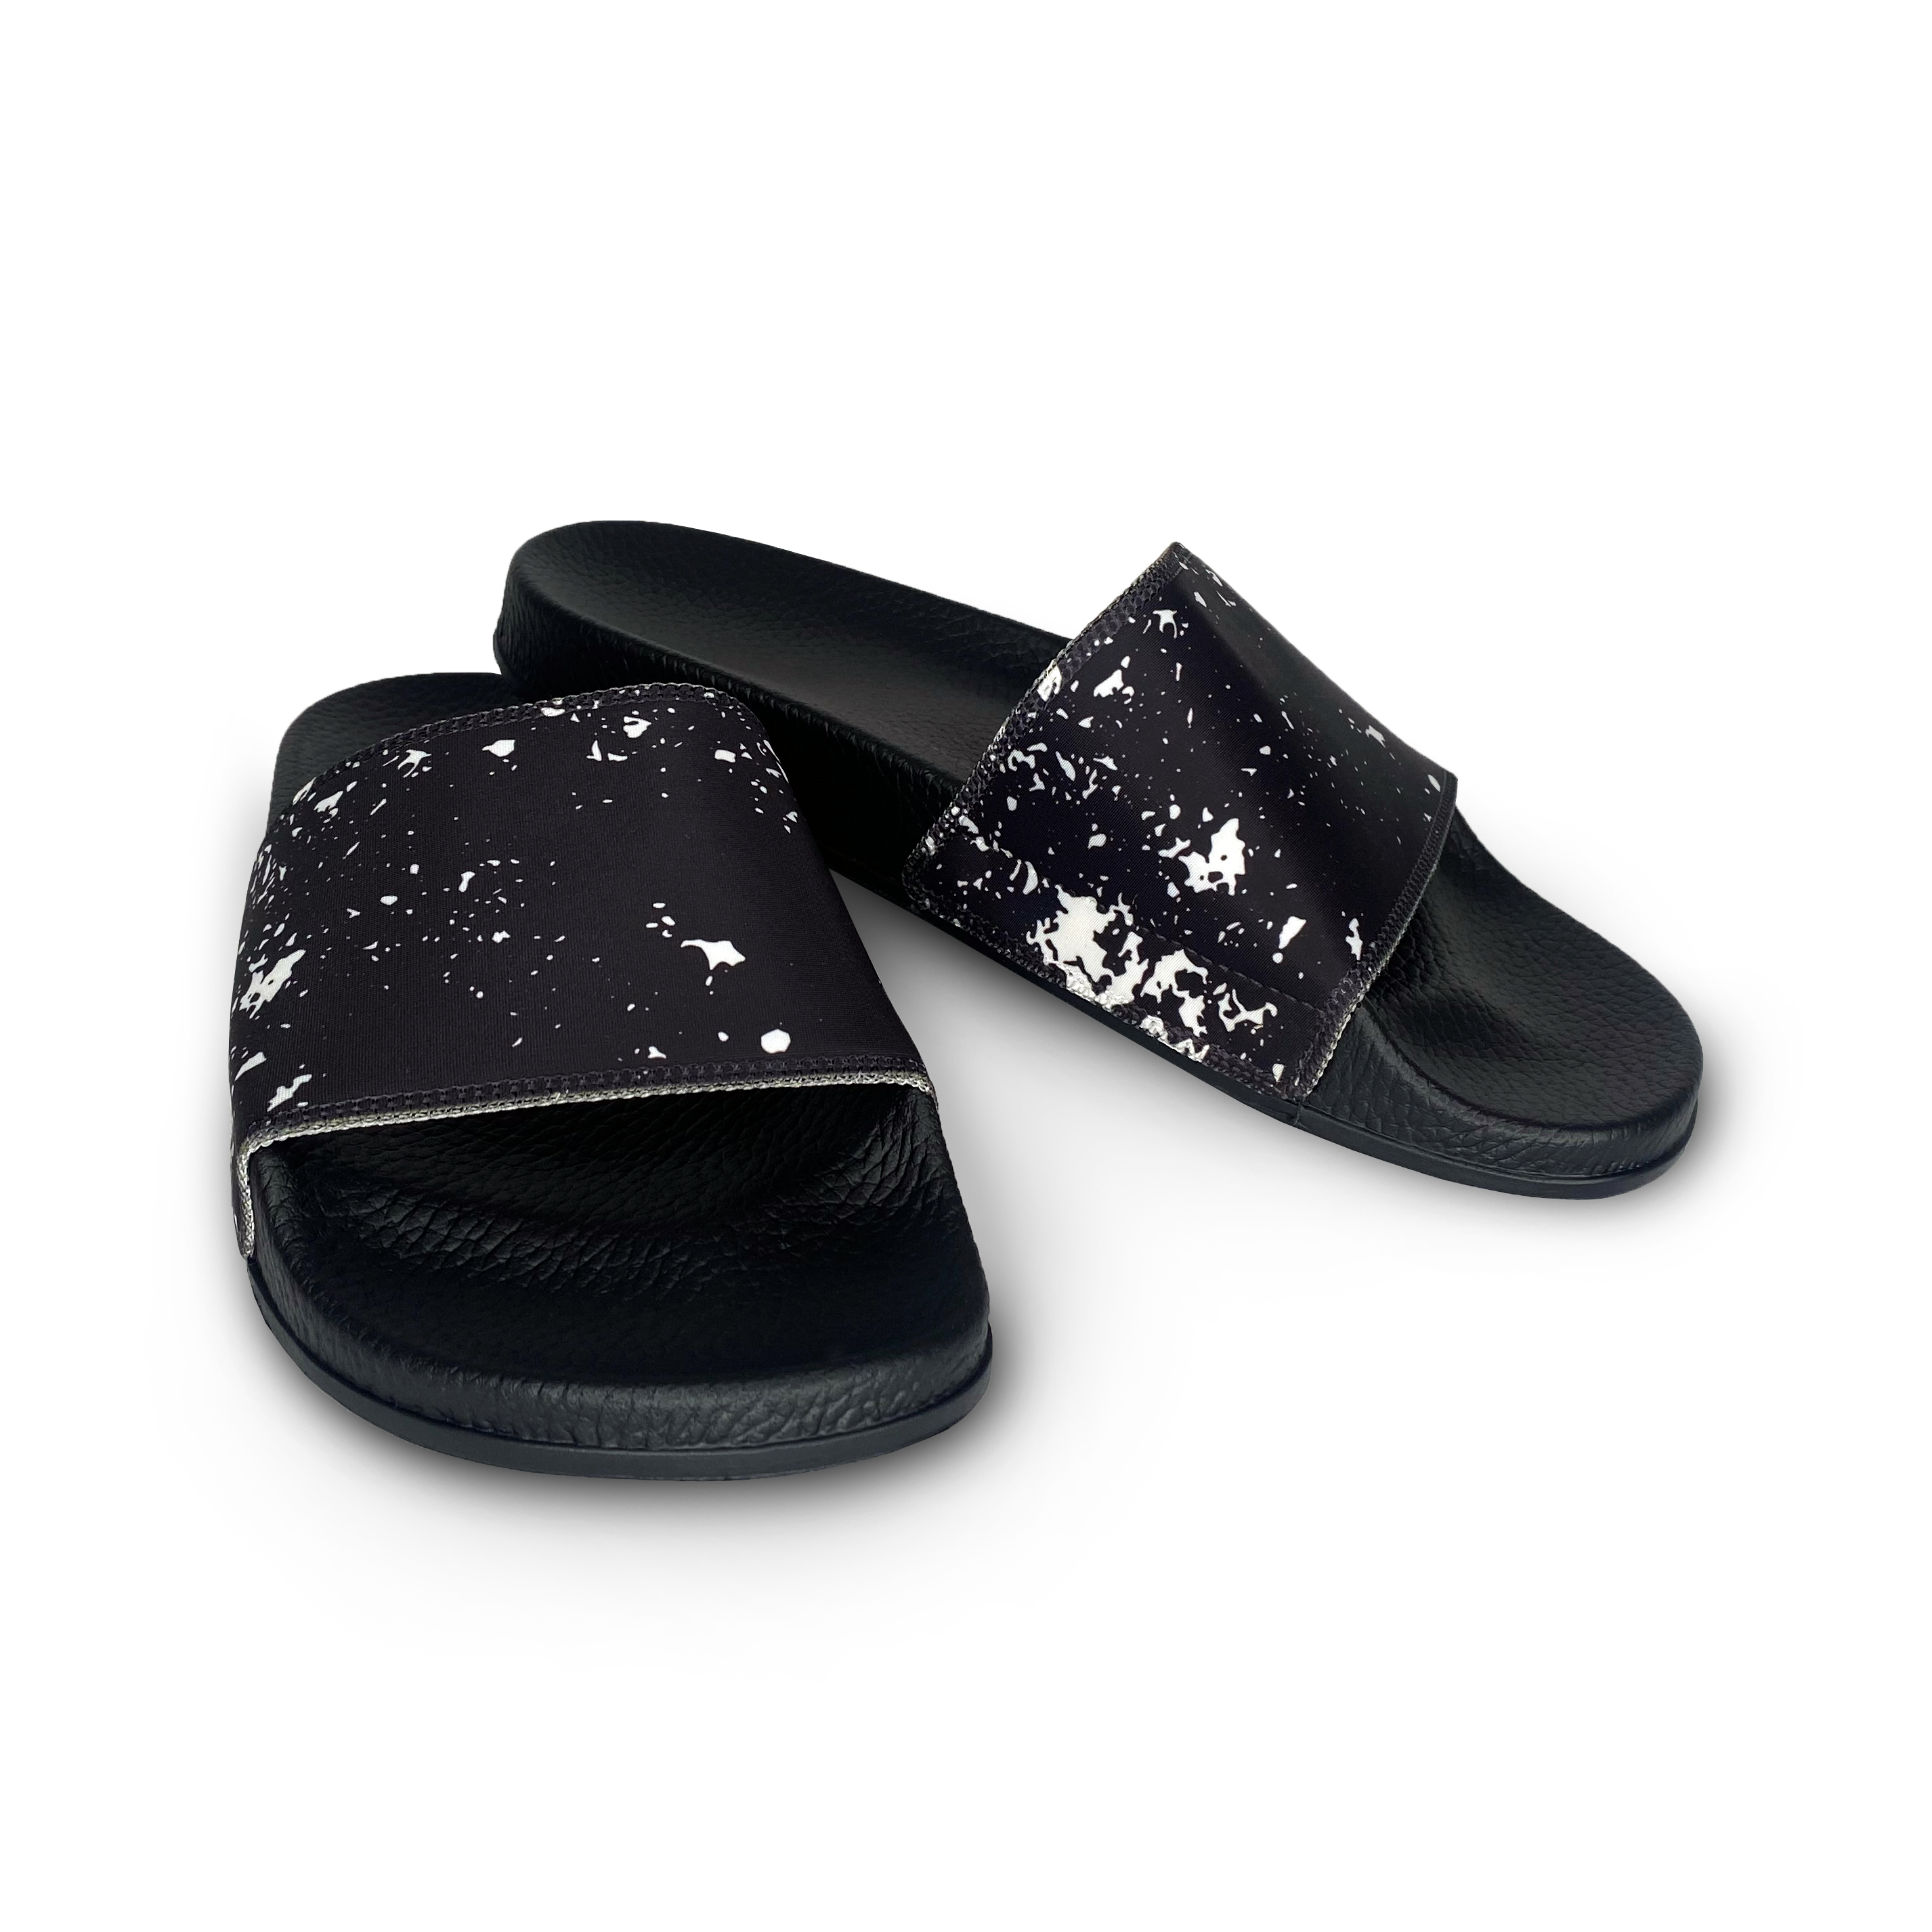 Black and White Splatter Slide Sandals